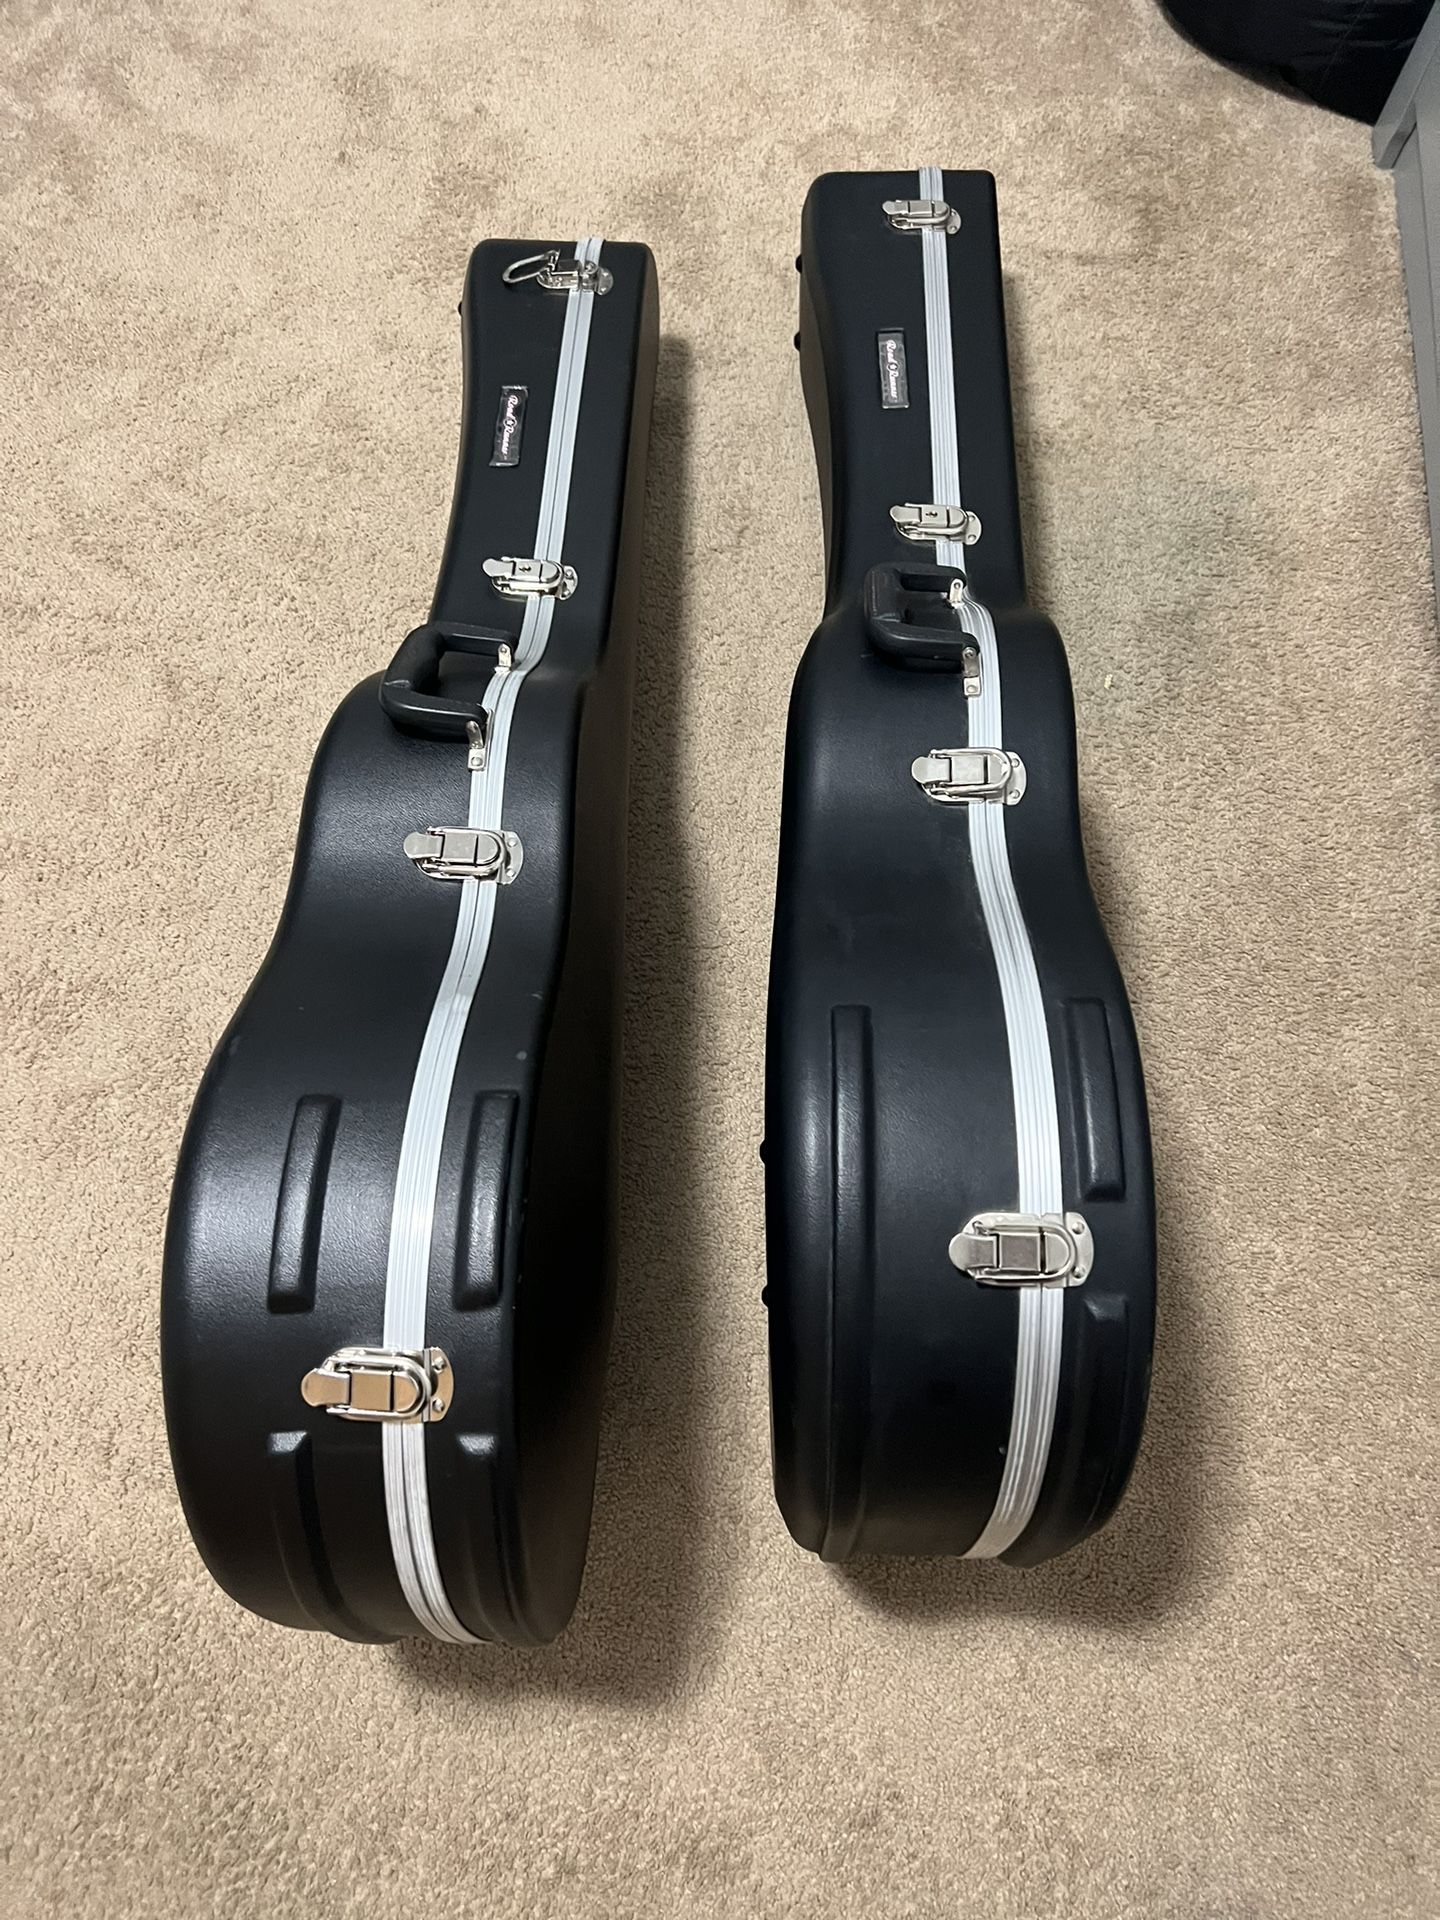 Roadrunner ABS Molded Guitar Cases 